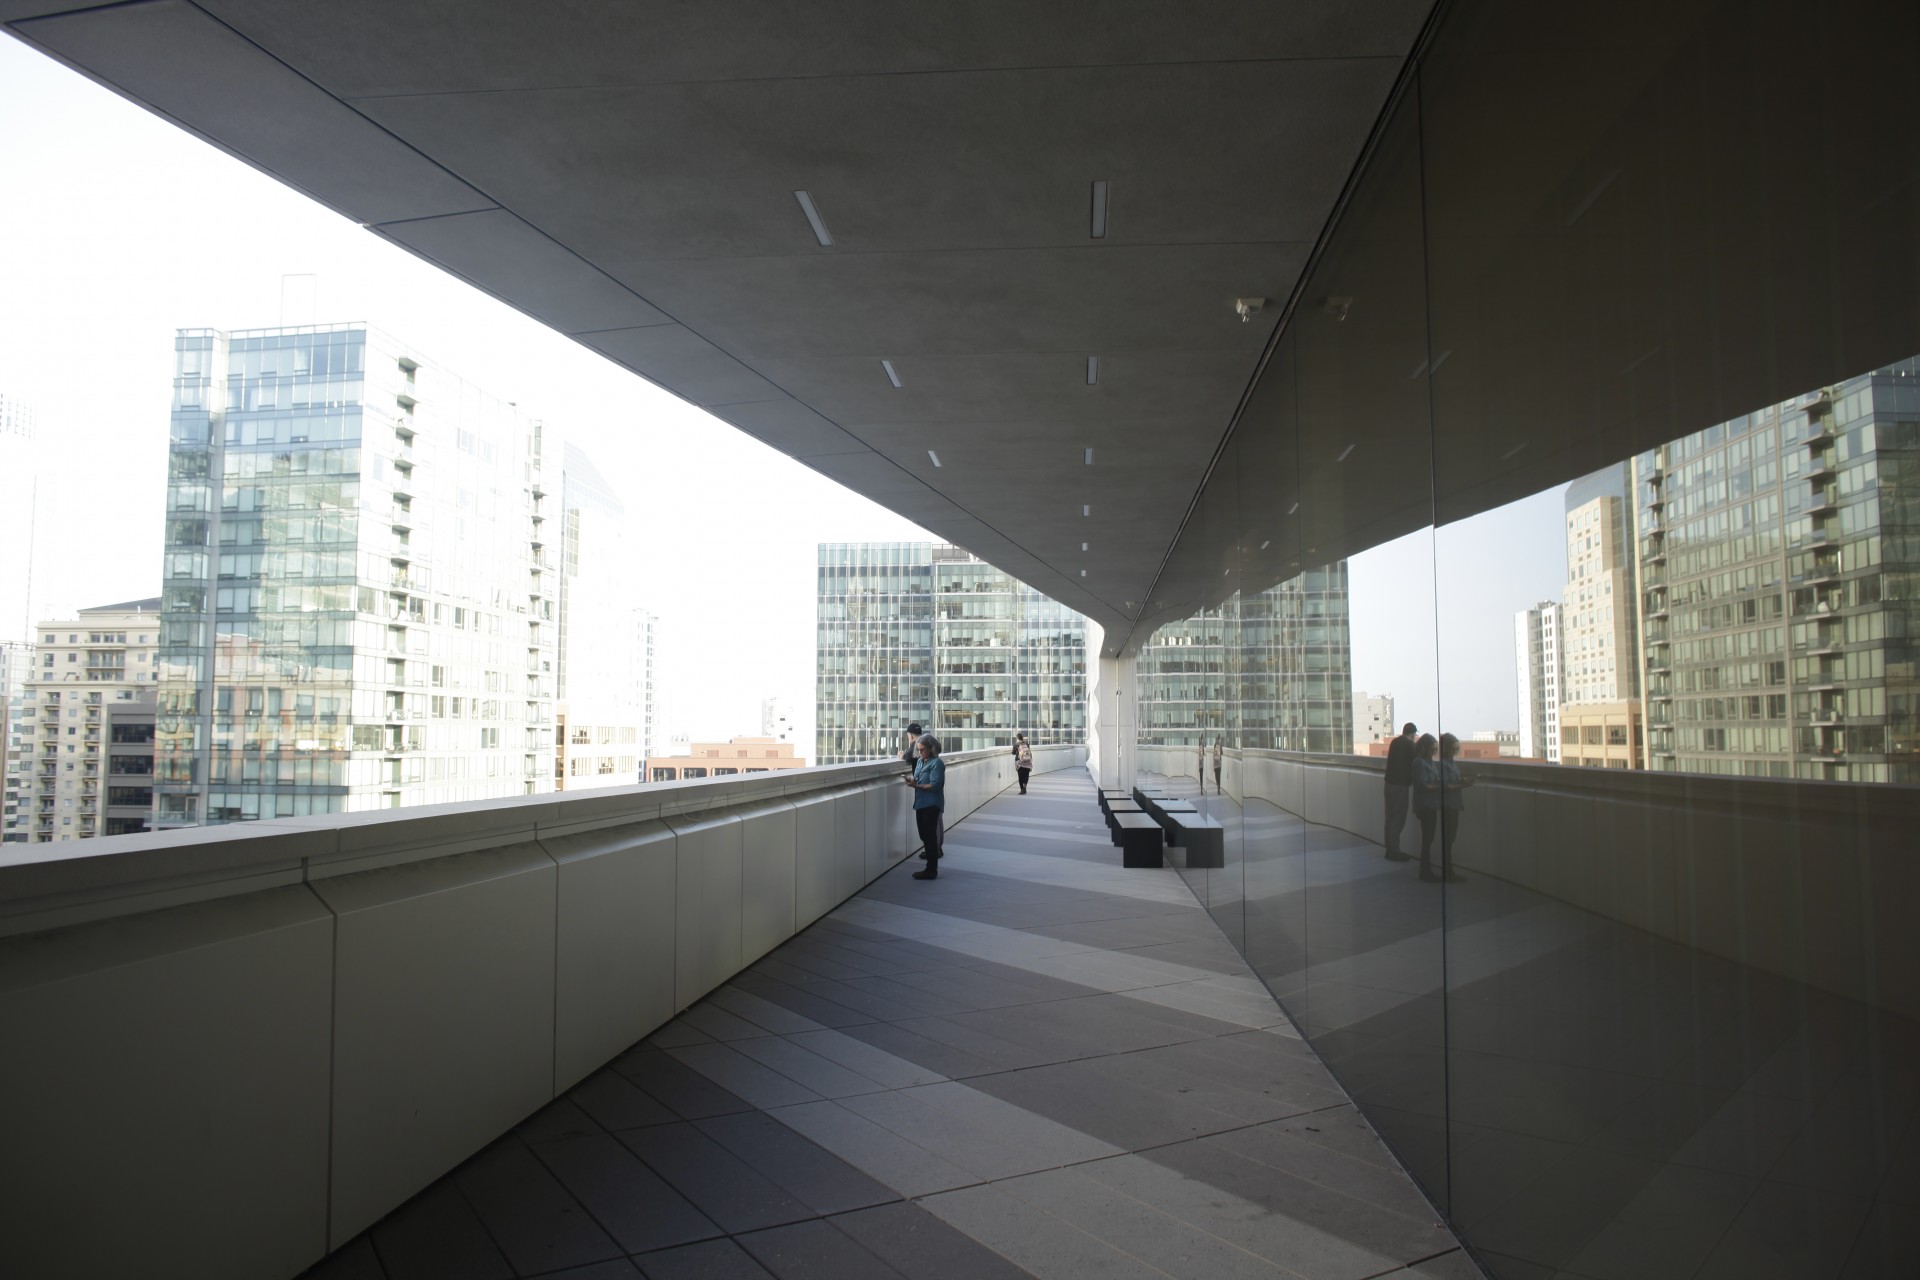 スノヘッタが拡張工事を手掛けたマリオ・ボッタ設計の「サンフランシスコ近代美術館」